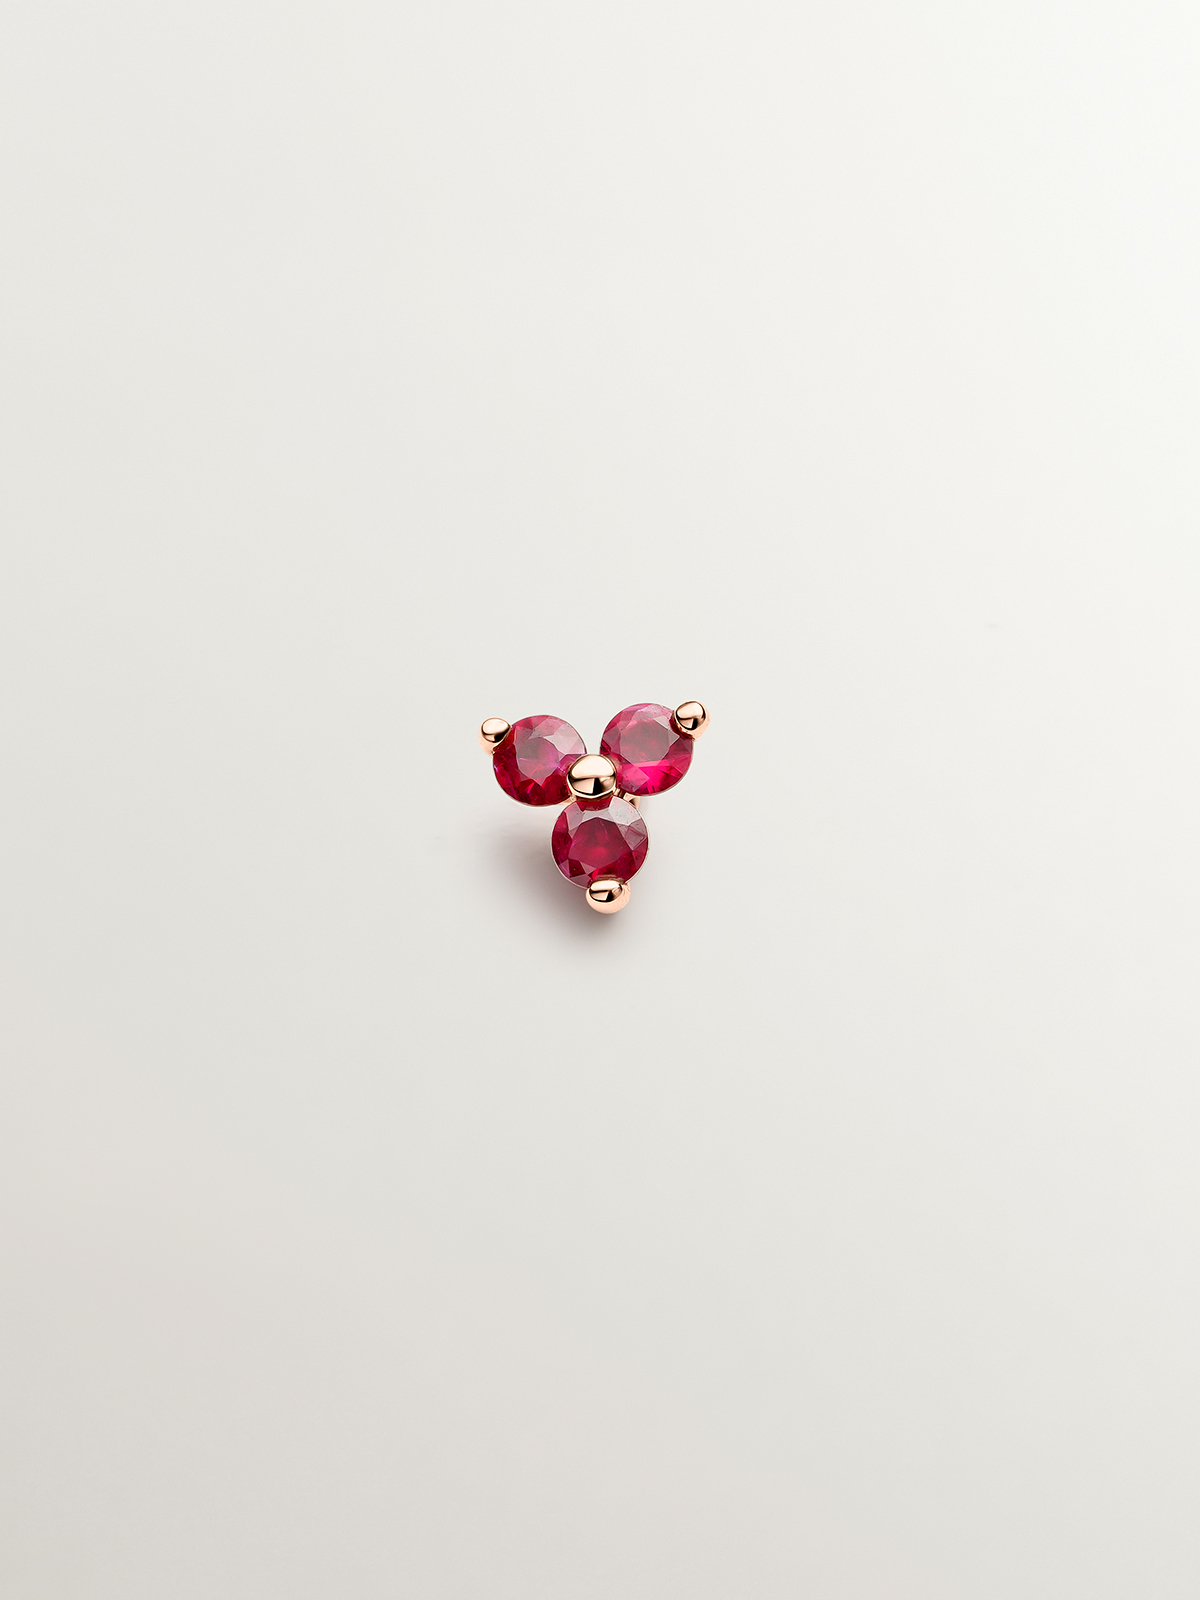 Boucle d'oreille individuelle en or rose 9K avec rubis